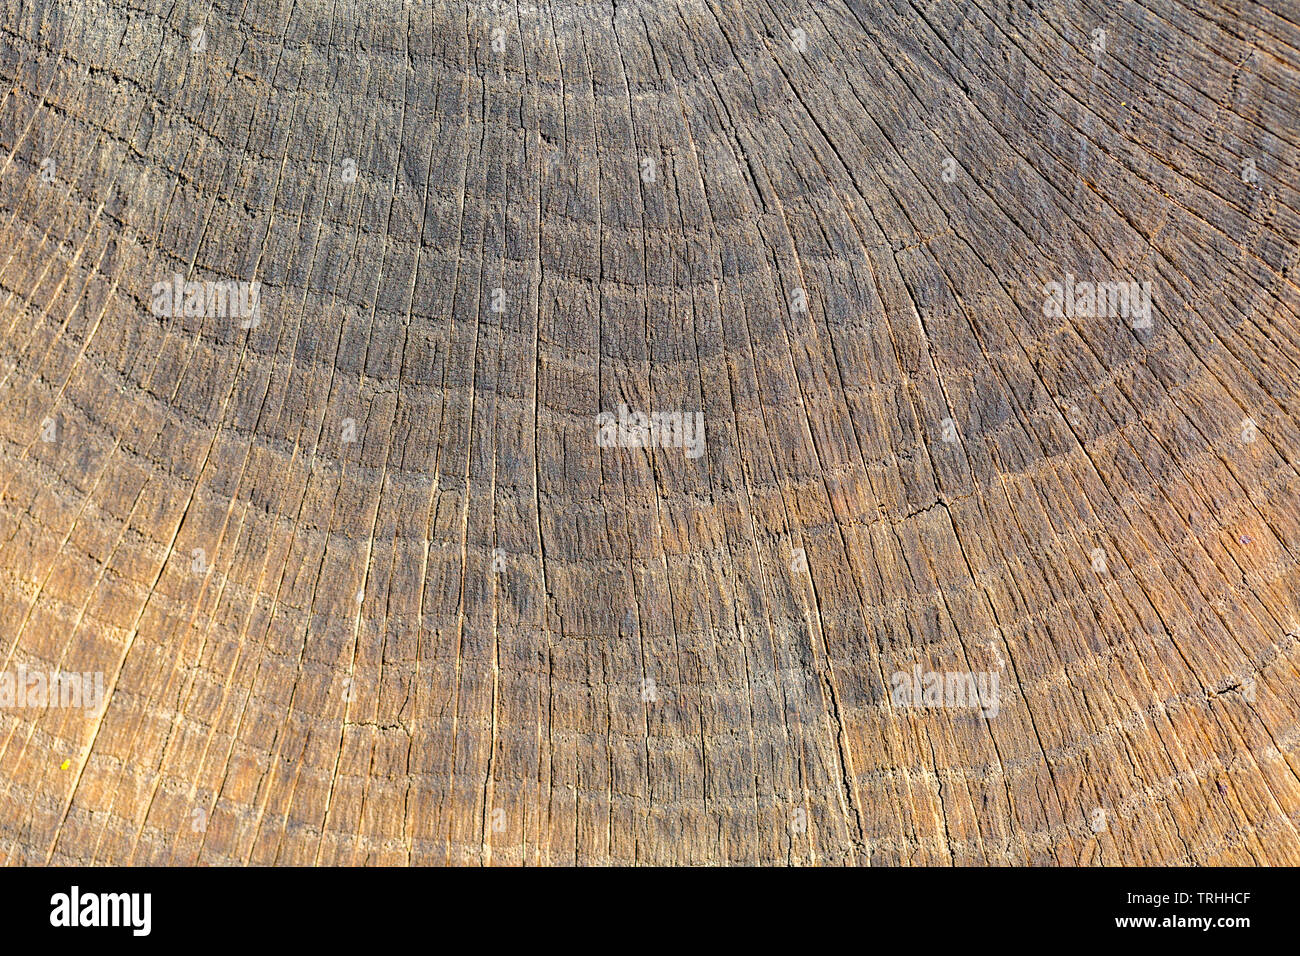 In der Nähe von Holz. Die zahlreichen Ringe stellen das Alter des Baumes. Strukturiert, strukturiert. Stockfoto